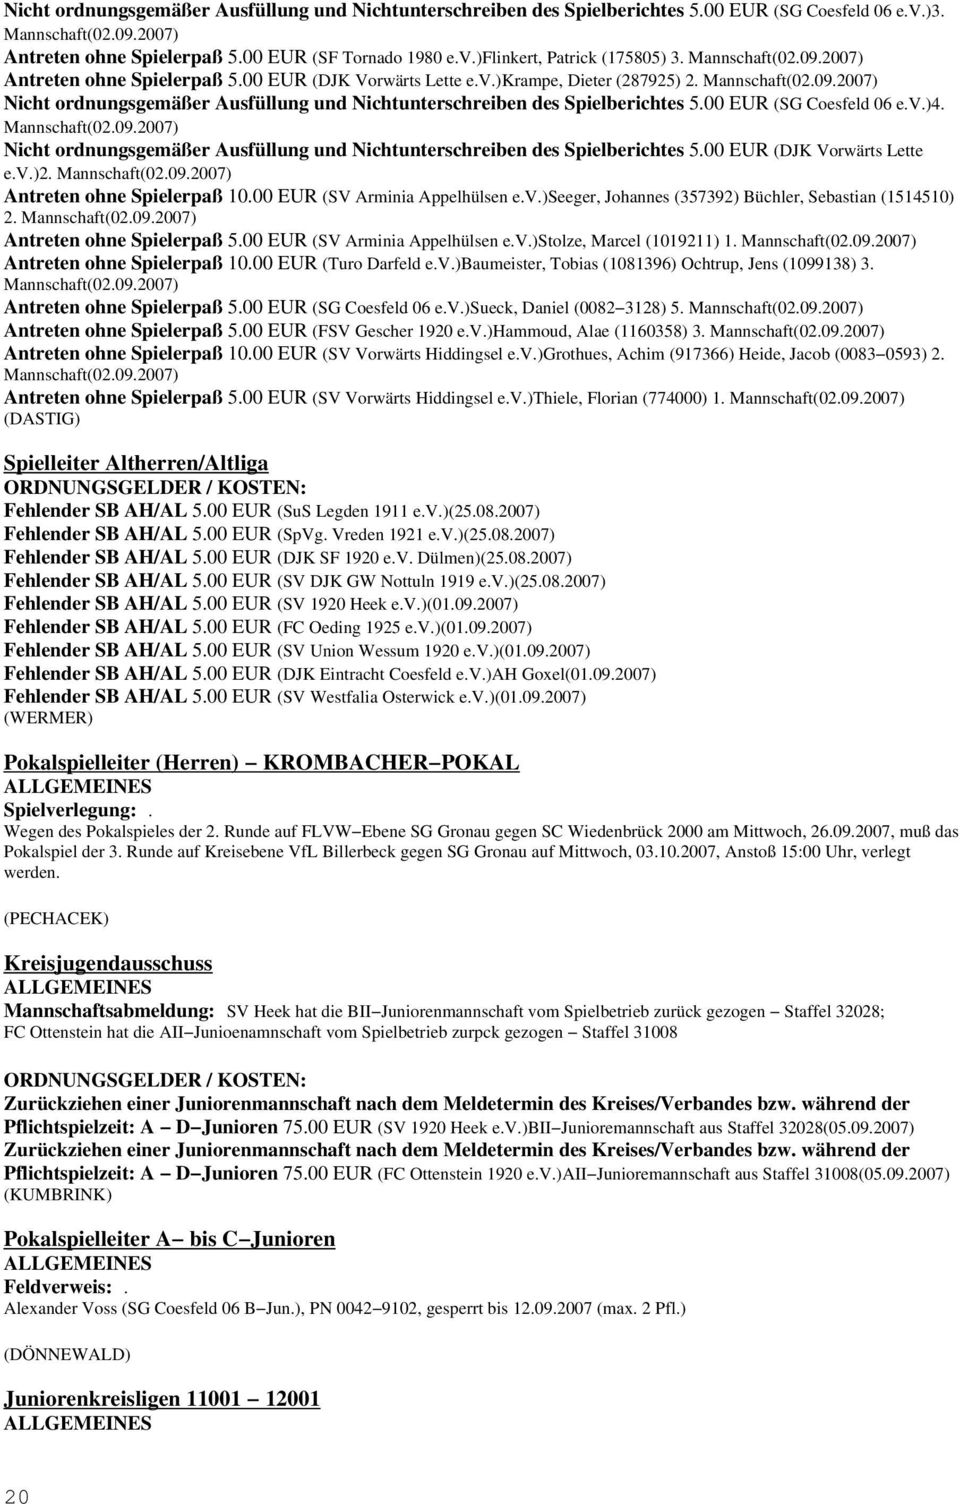 00 EUR (SG Coesfeld 06 e.v.)4. Mannschaft(02.09.2007) Nicht ordnungsgemäßer Ausfüllung und Nichtunterschreiben des Spielberichtes 5.00 EUR (DJK Vorwärts Lette e.v.)2. Mannschaft(02.09.2007) Antreten ohne Spielerpaß 10.